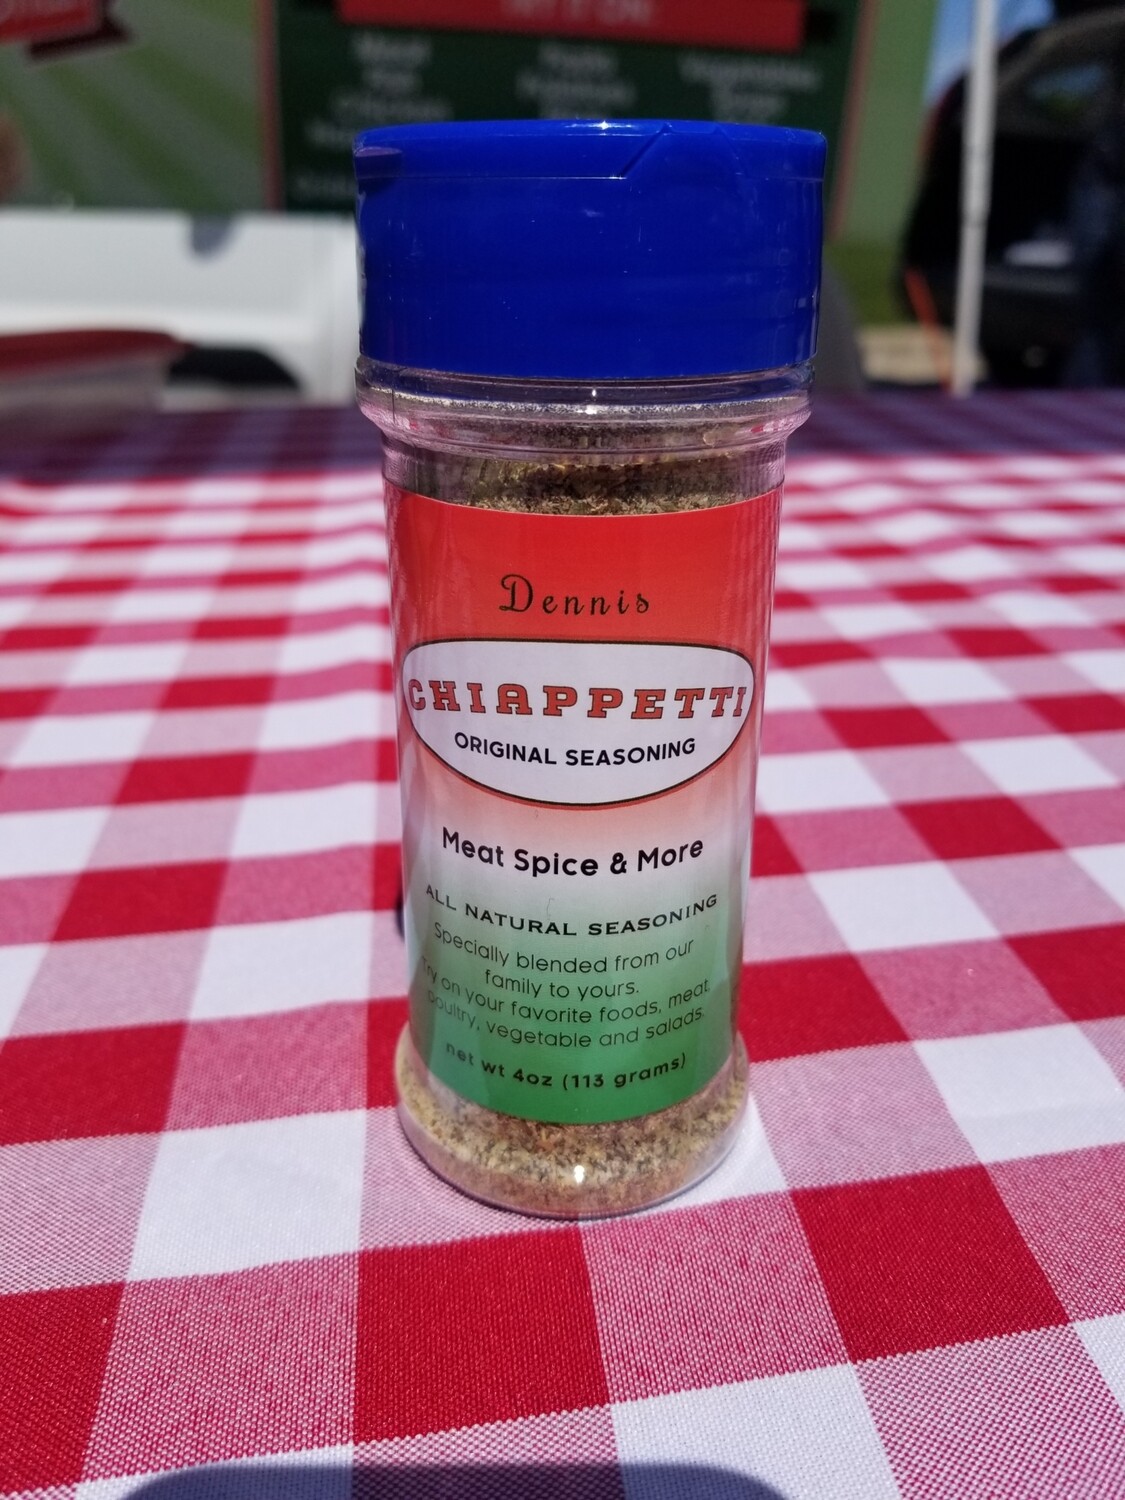 Chiappetti Seasoning Blue Cap Bottle